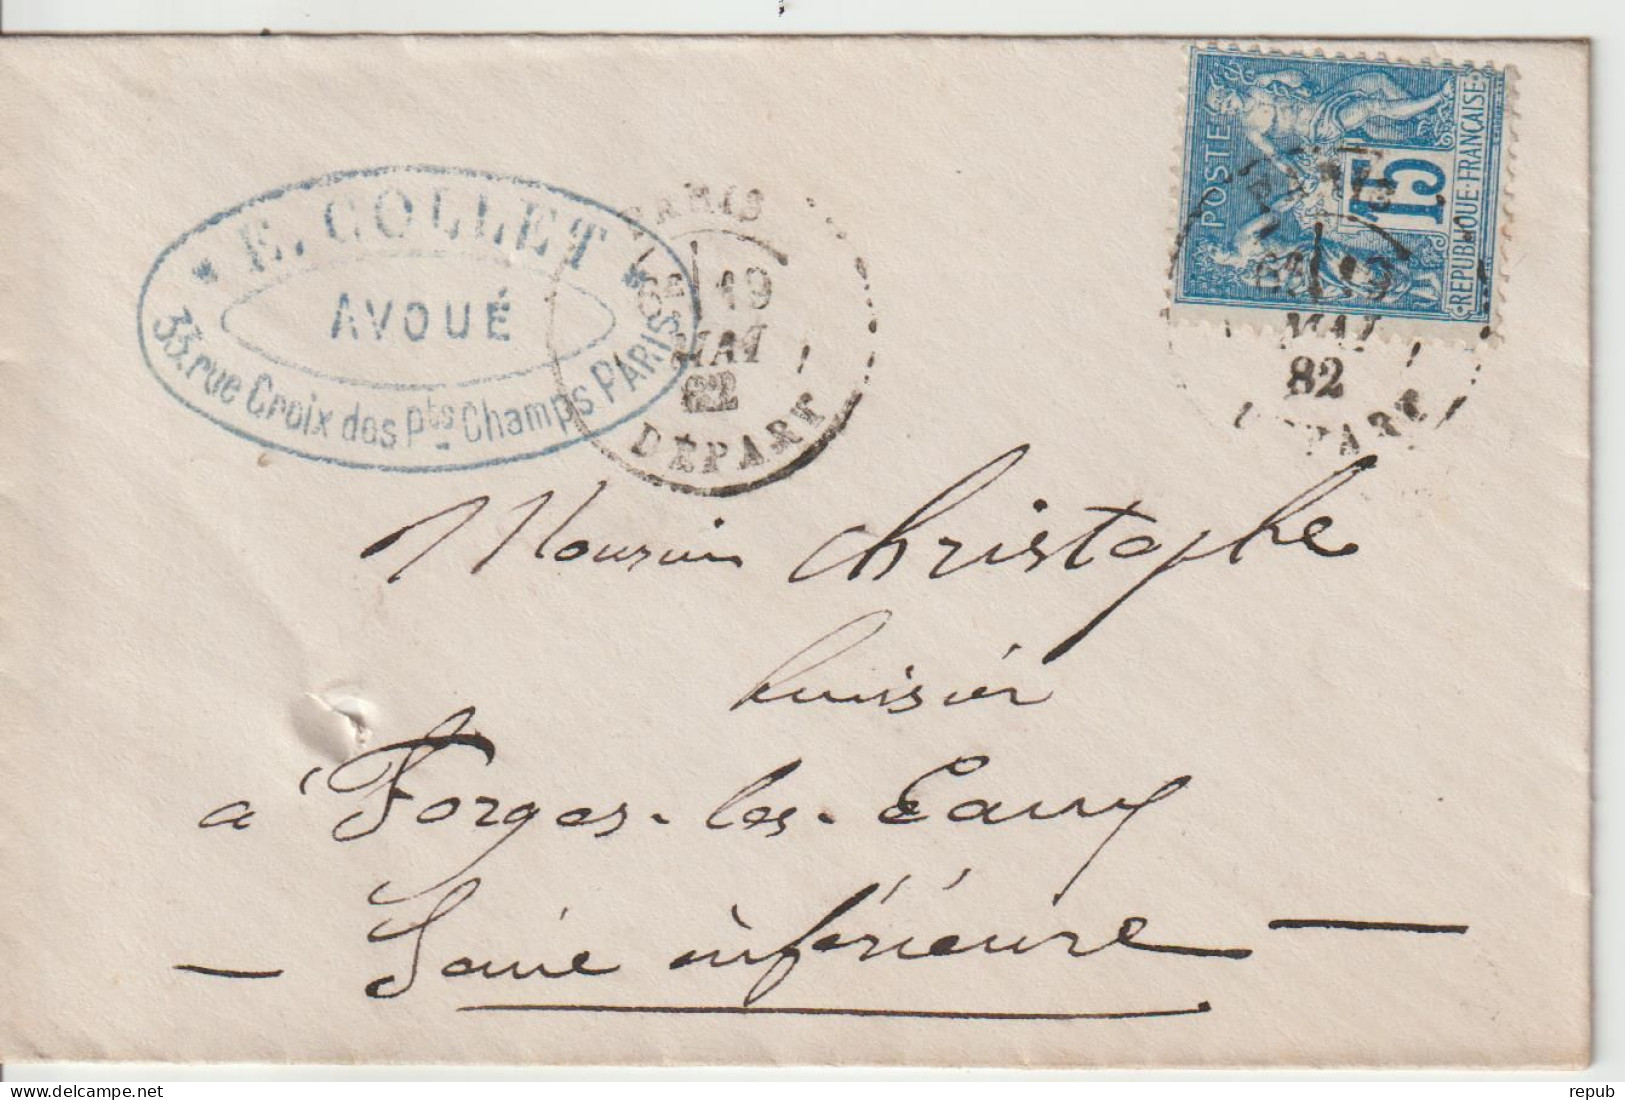 France Lettre 1882 De Paris Départ Pour Forges (76) - 1877-1920: Semi Modern Period